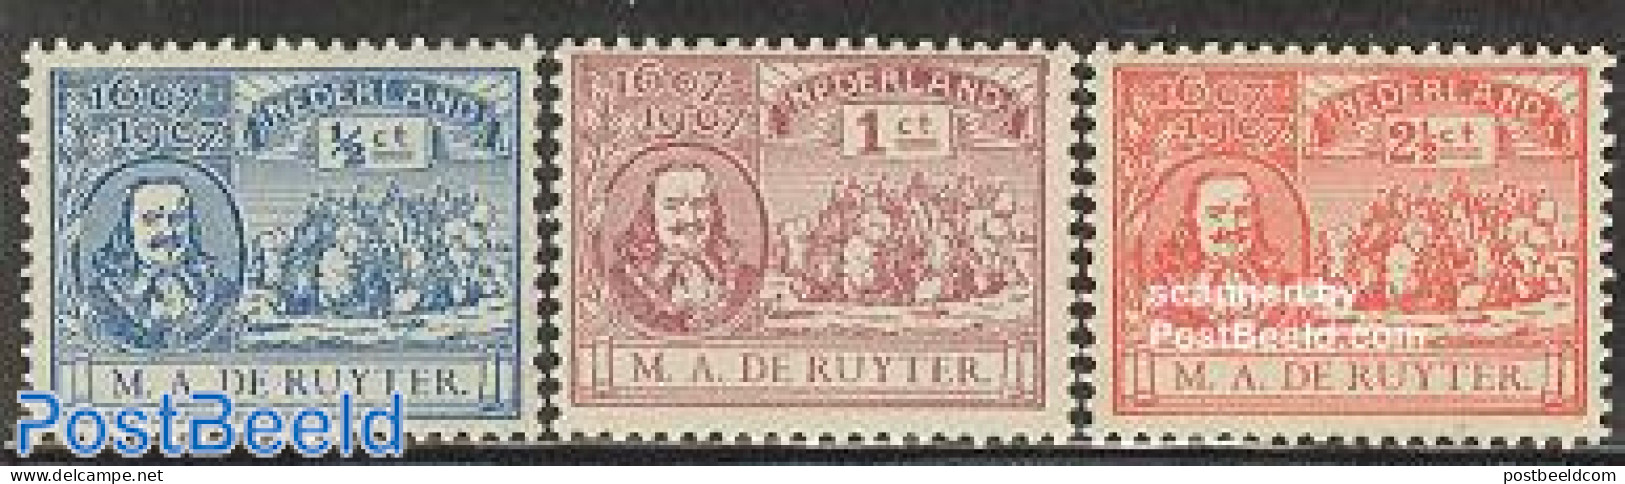 Netherlands 1907 Michiel De Ruyter 3v, Unused (hinged), Transport - Ships And Boats - Ongebruikt